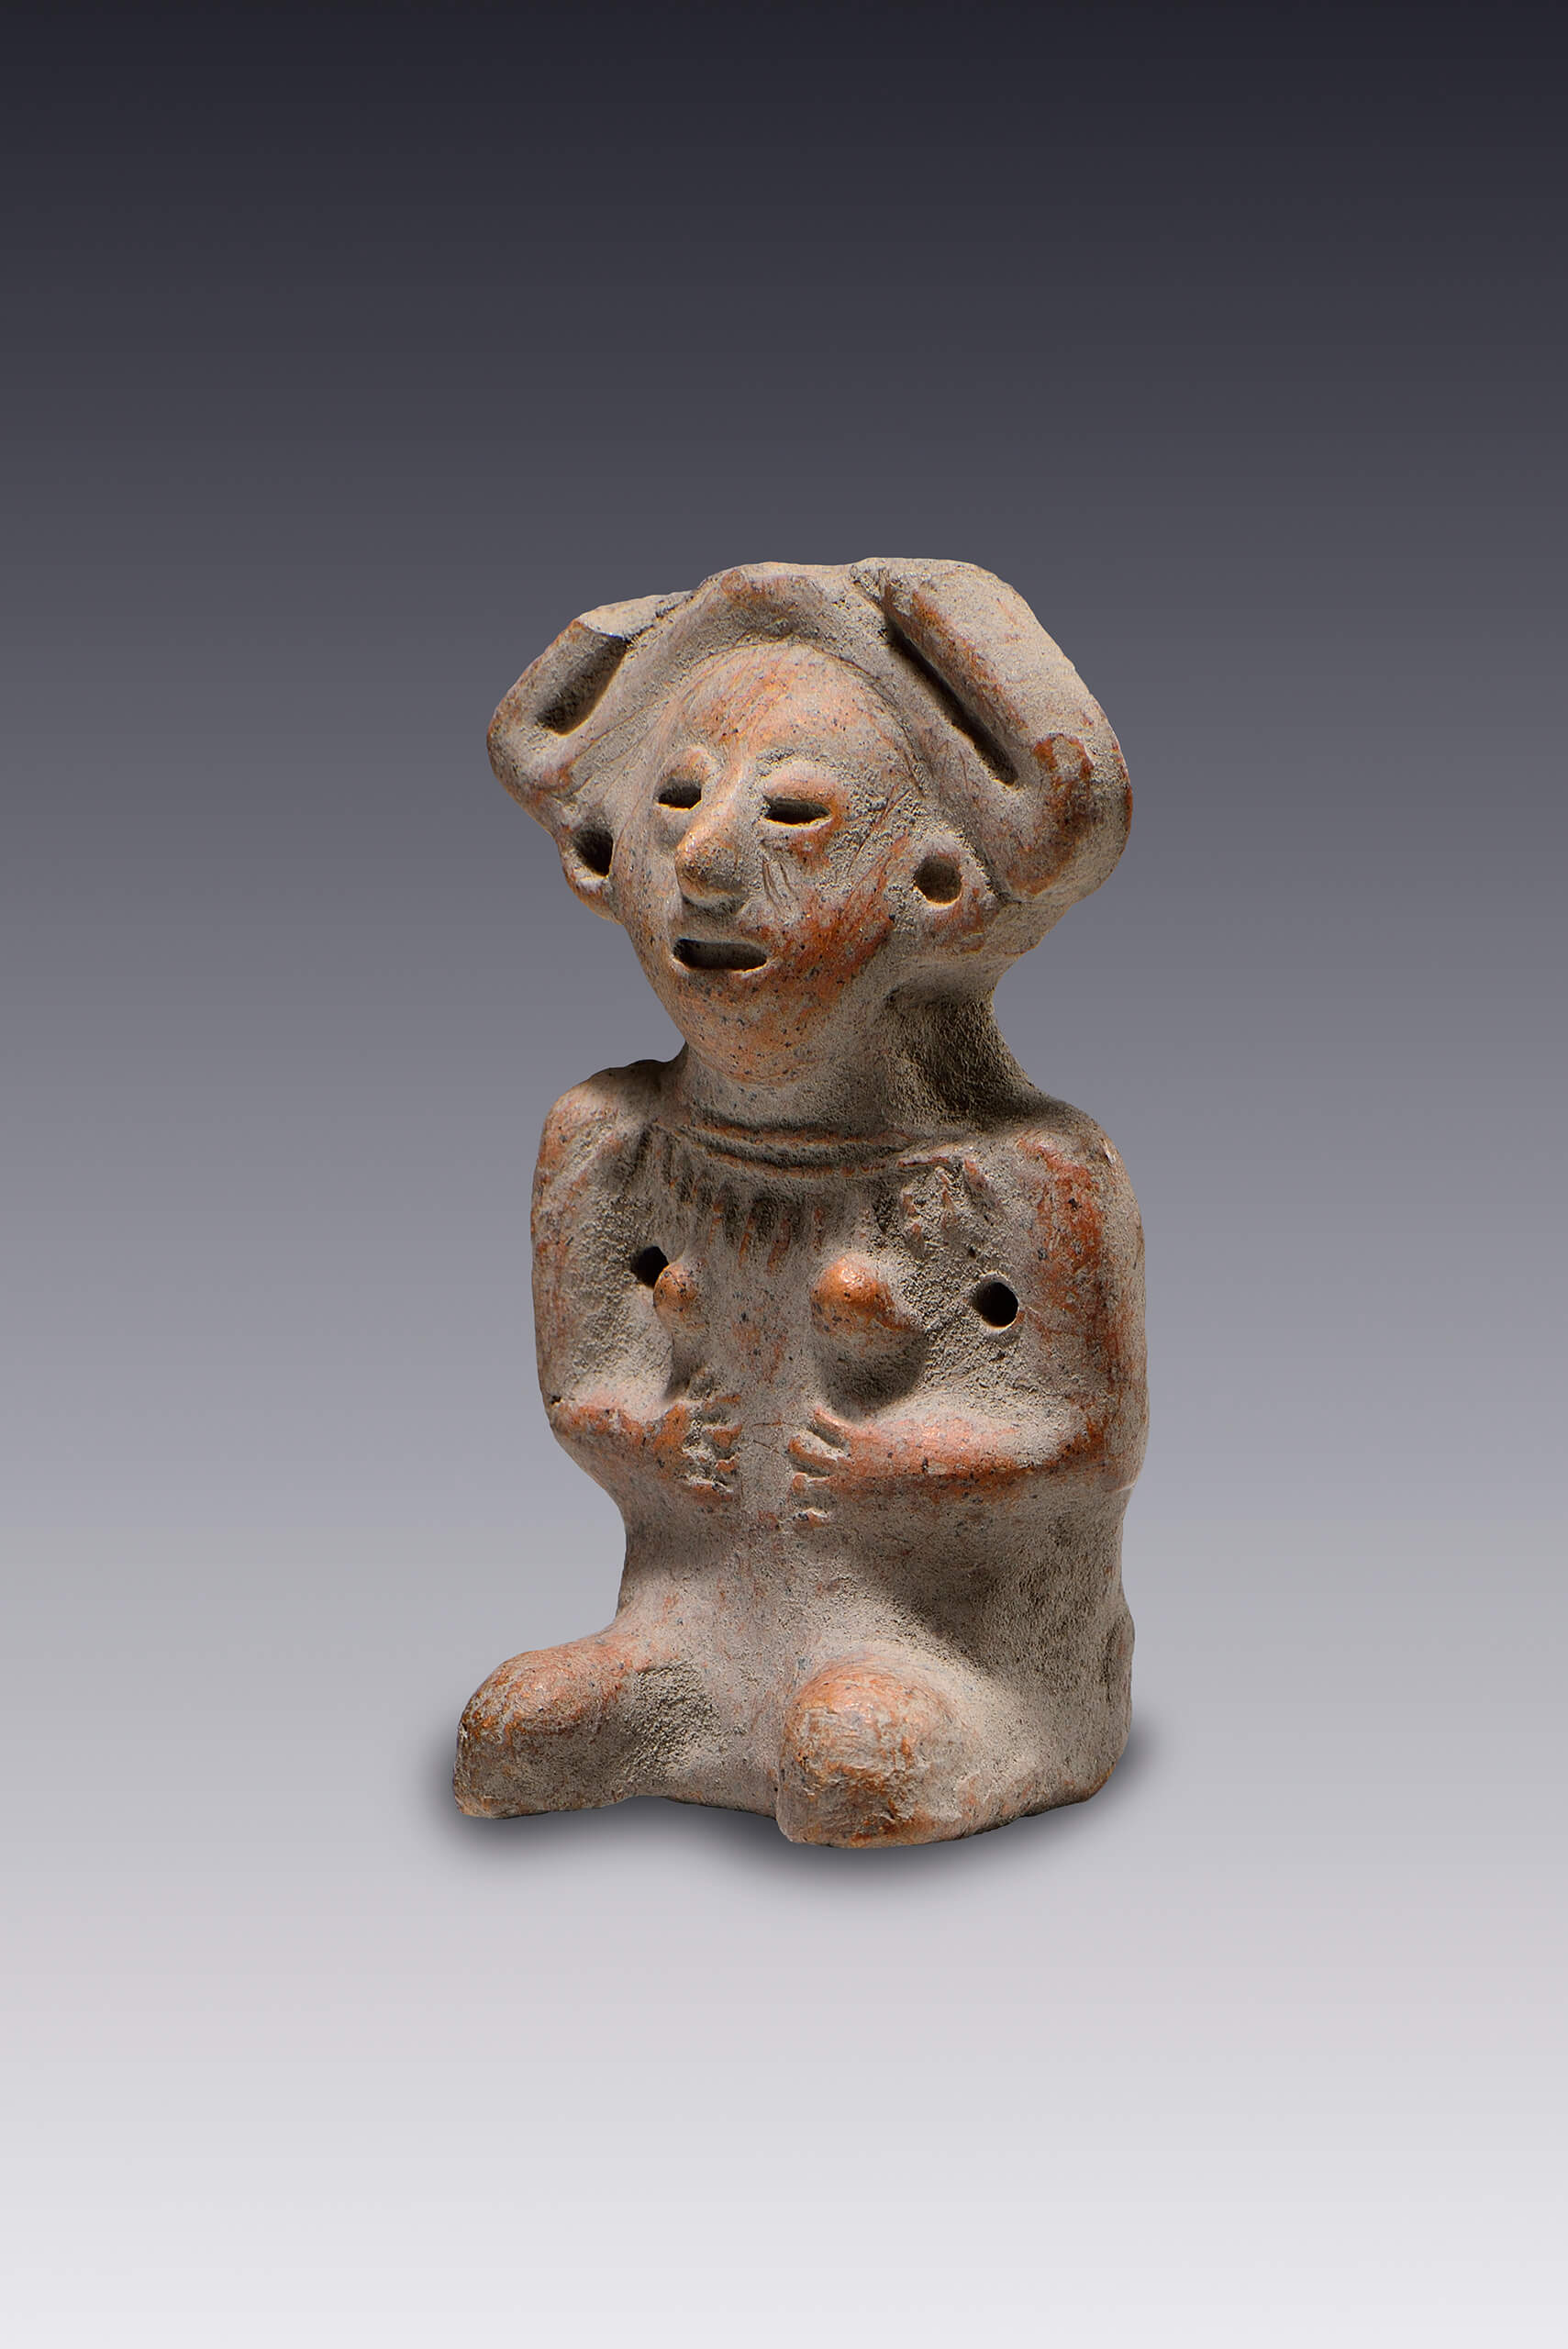 Maraca con forma femenina | El México antiguo. Salas de Arte Prehispánico | Museo Amparo, Puebla